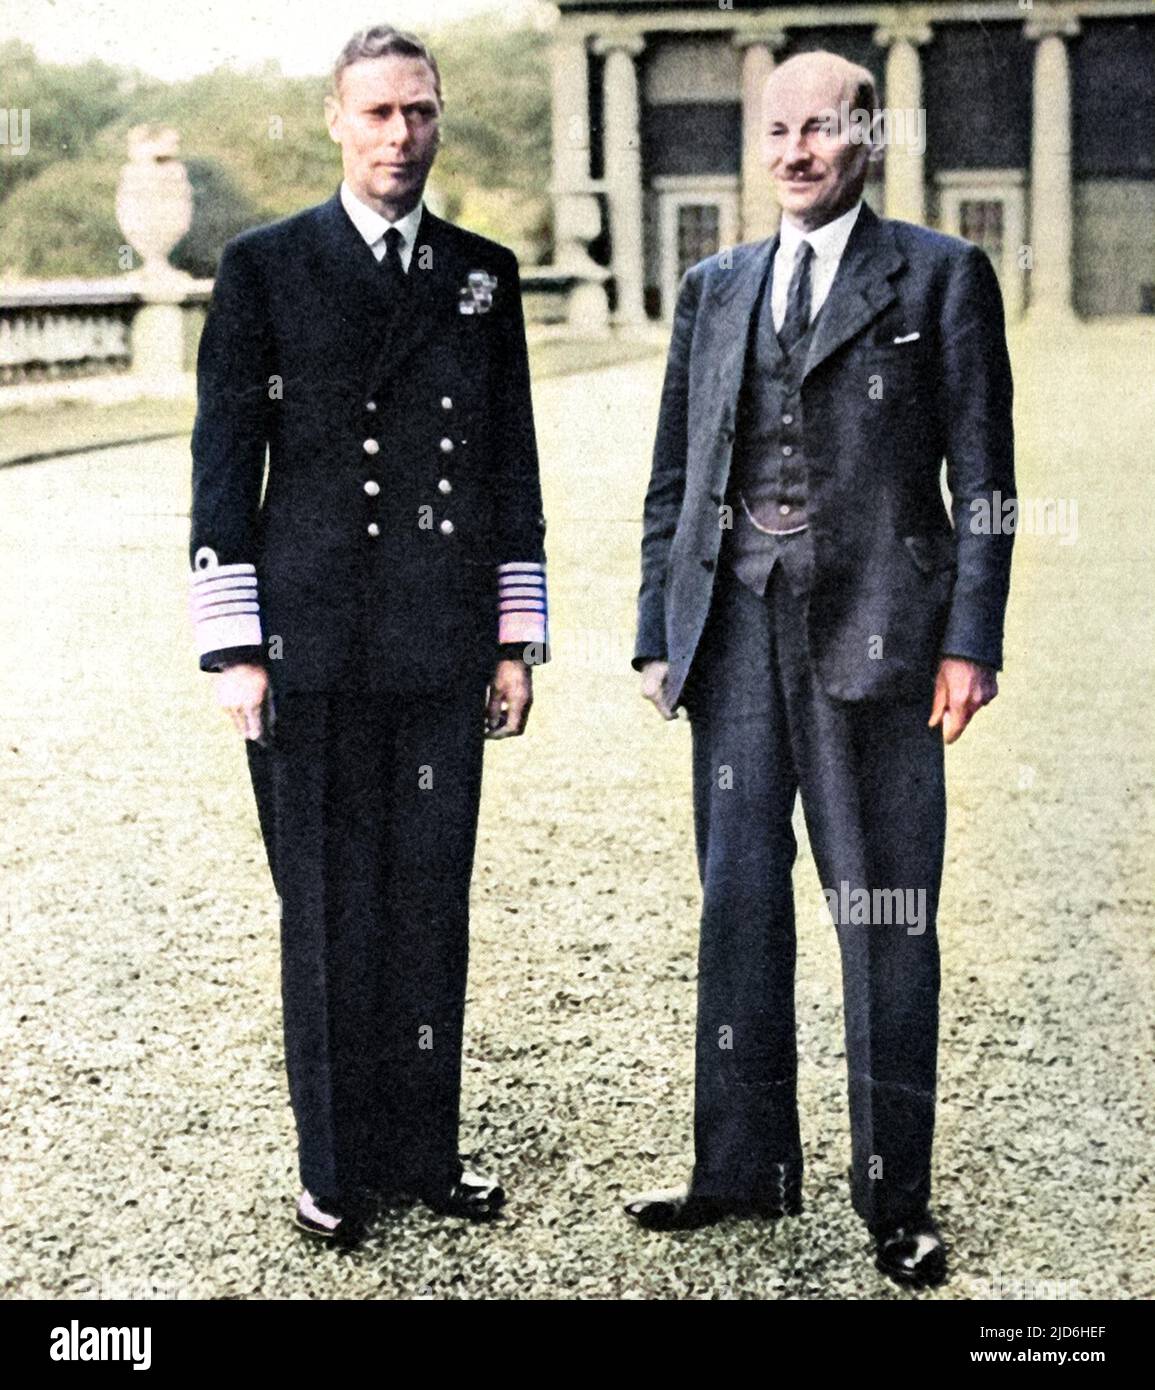 Foto von King George VI (1895 - 1952), Clement Attlee, 1. Earl Attlee, (1883 - 1967), auf dem Gelände des Buckingham Palace, 1945. Attlee hatte gerade die Labour Party zum Sieg bei den Parlamentswahlen geführt und wurde damit Premierminister. Kolorierte Version von: 10218551 Datum: 1945 Stockfoto